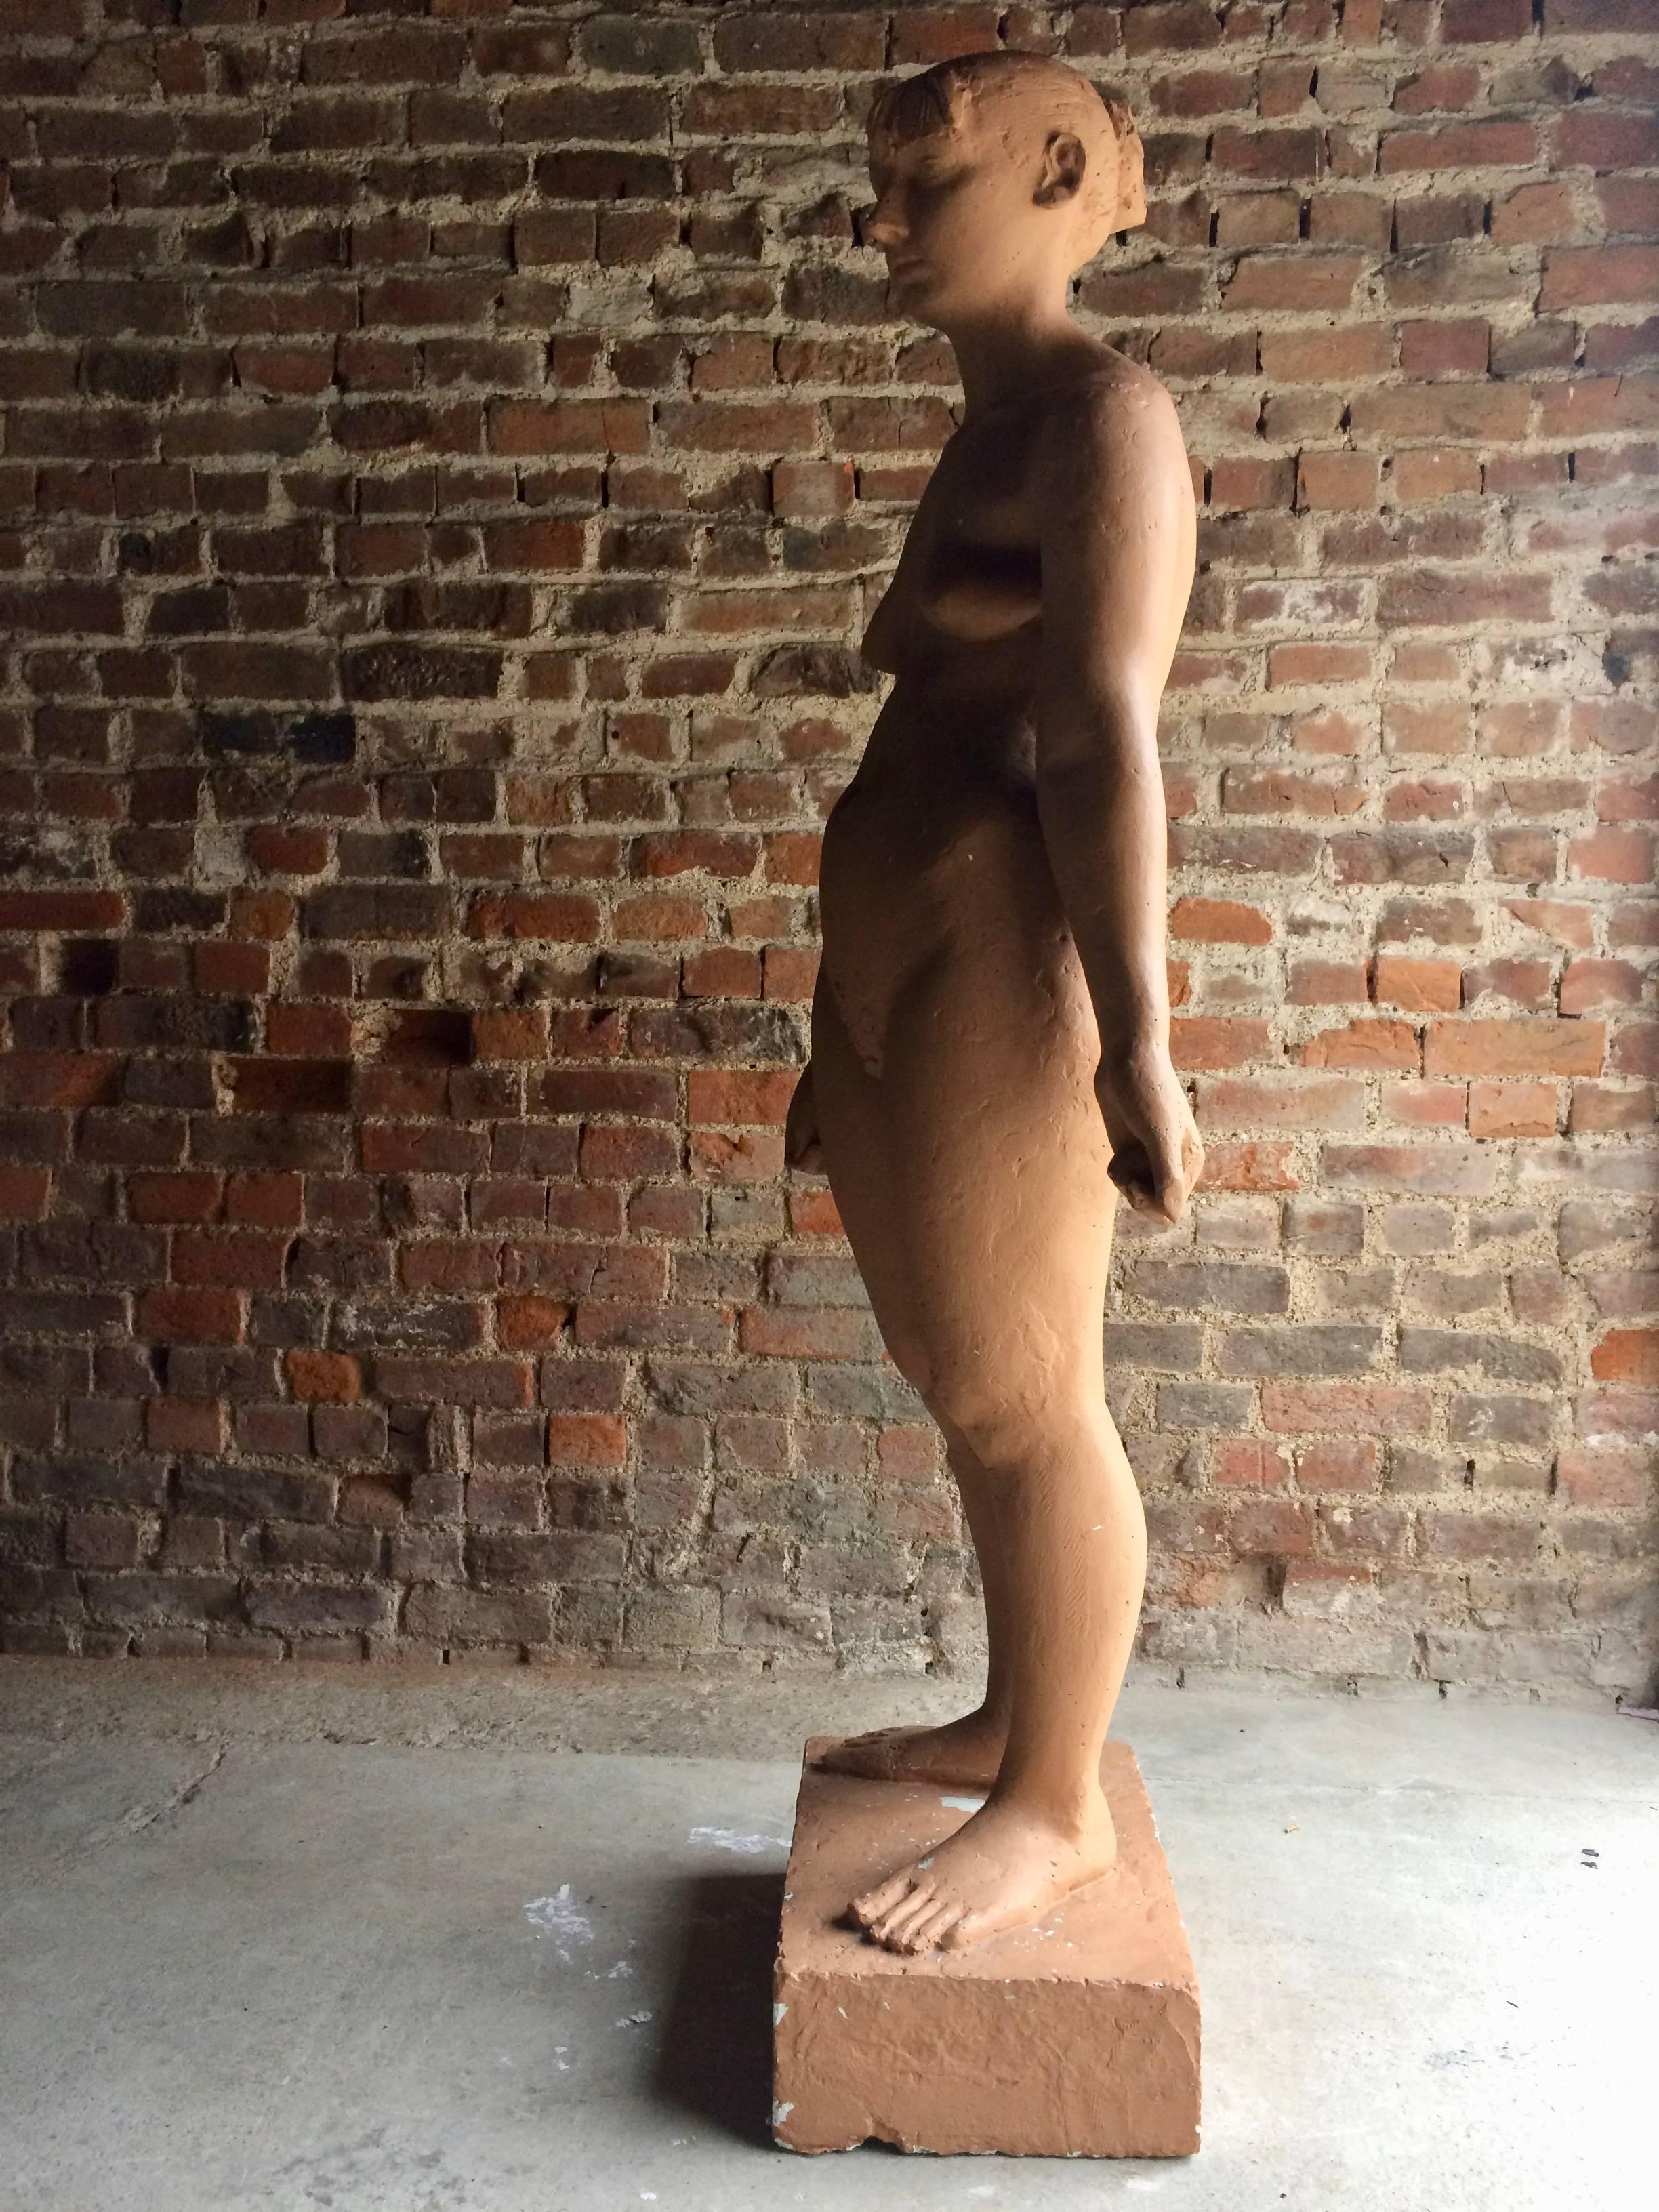 Lifesize Female Nude Sculpture by Karin Jonzen British Artist 1